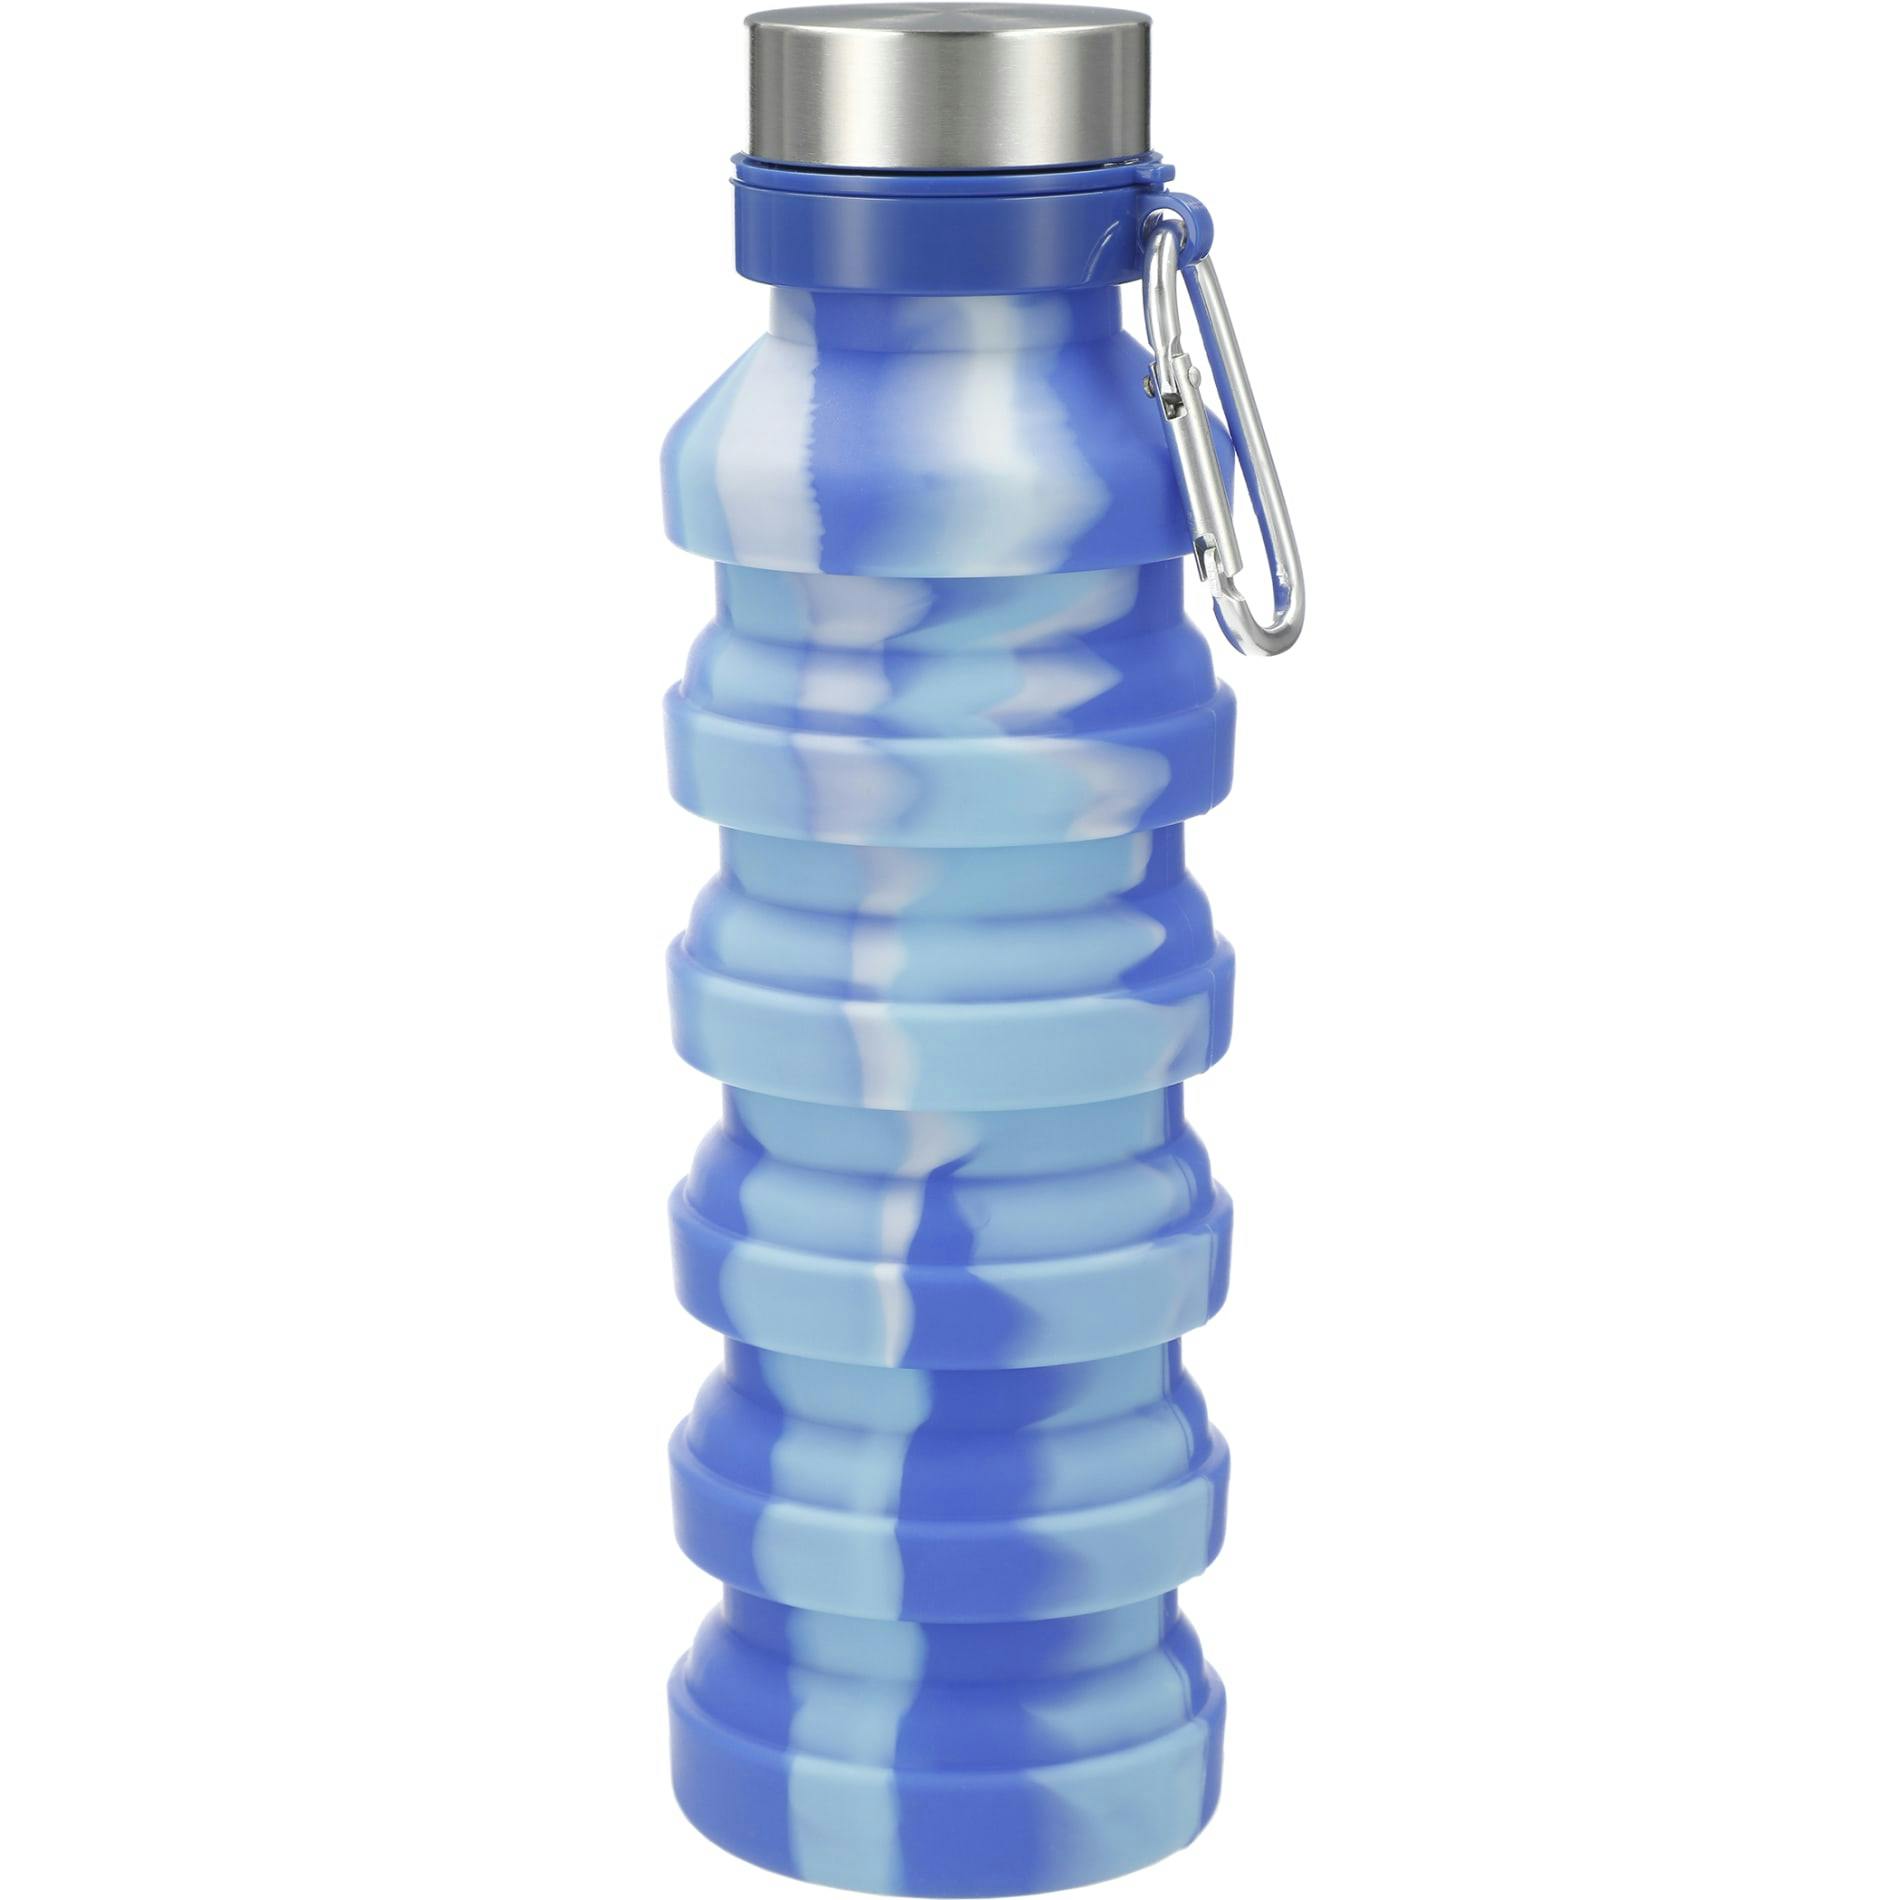 Zigoo Silicone Collapsible Bottle 18oz - Tie Dye - additional Image 3